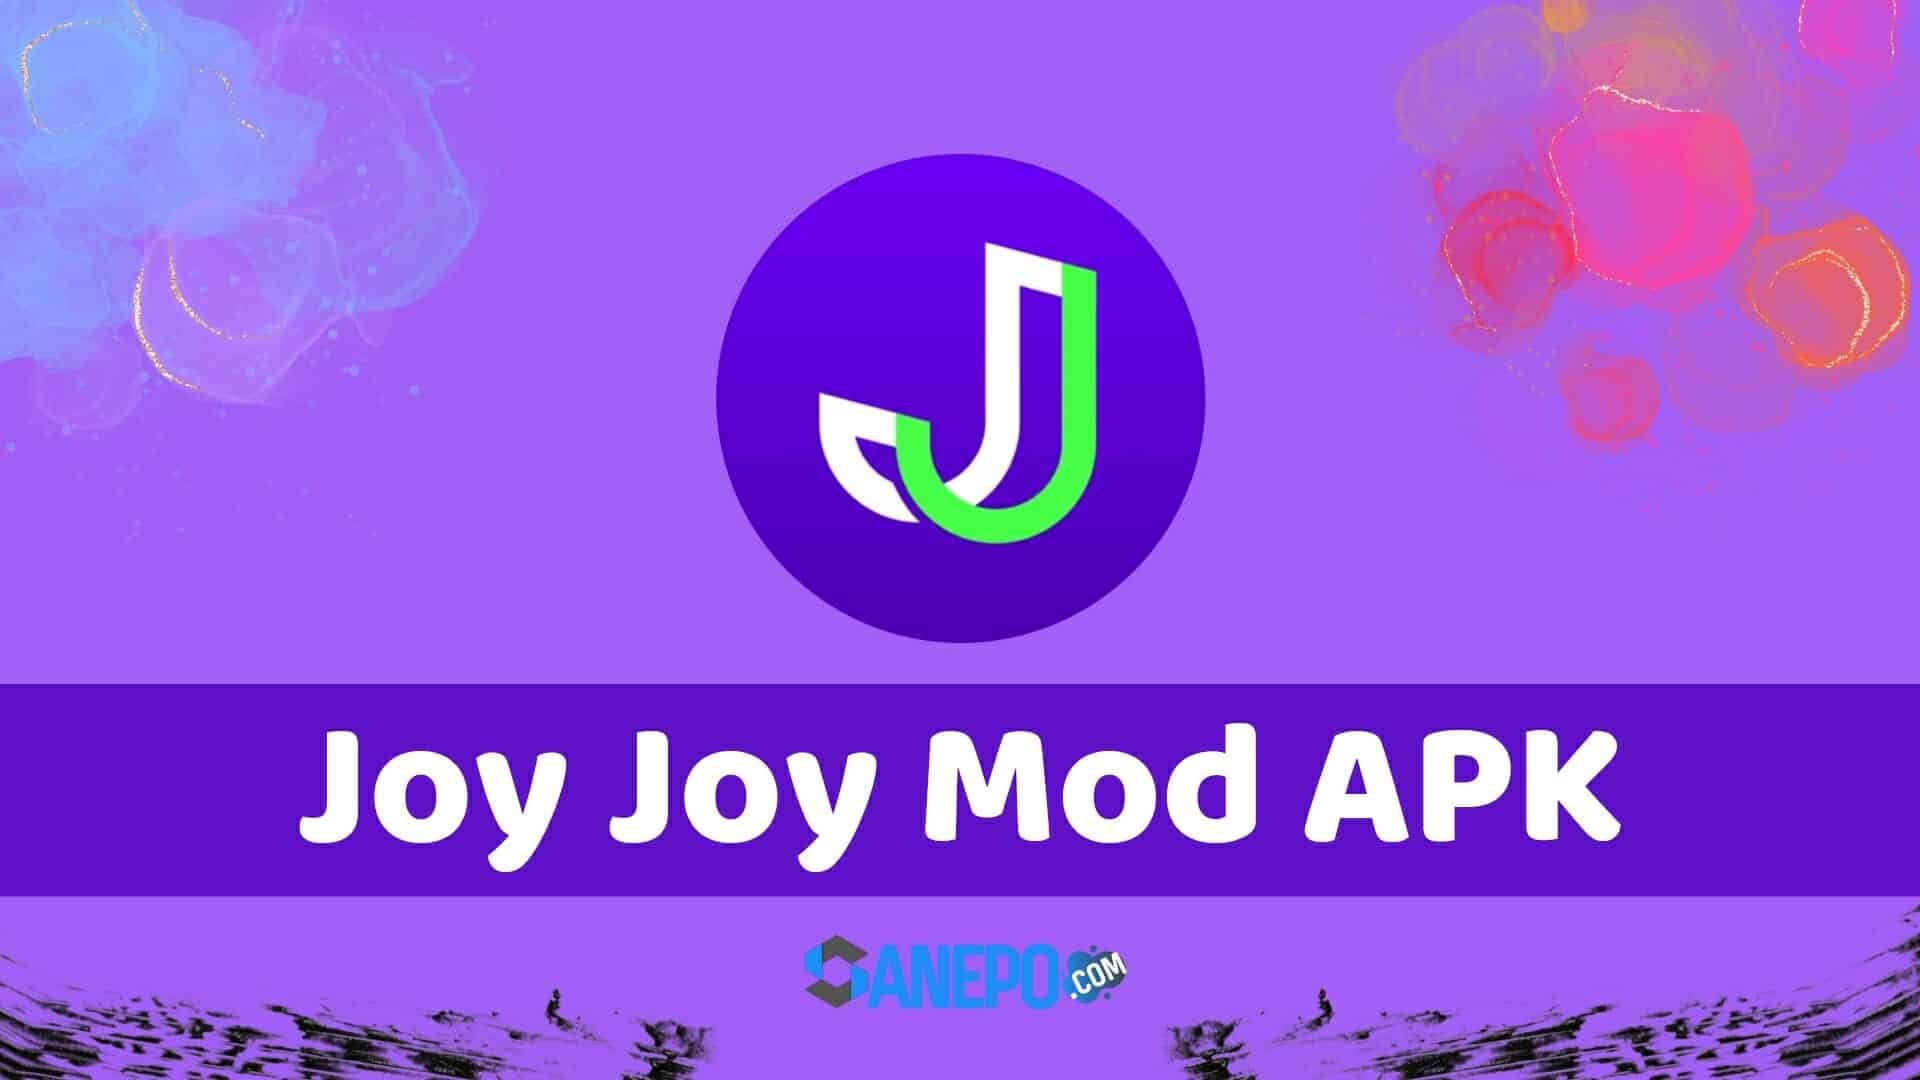 Joy Joy Mod APK